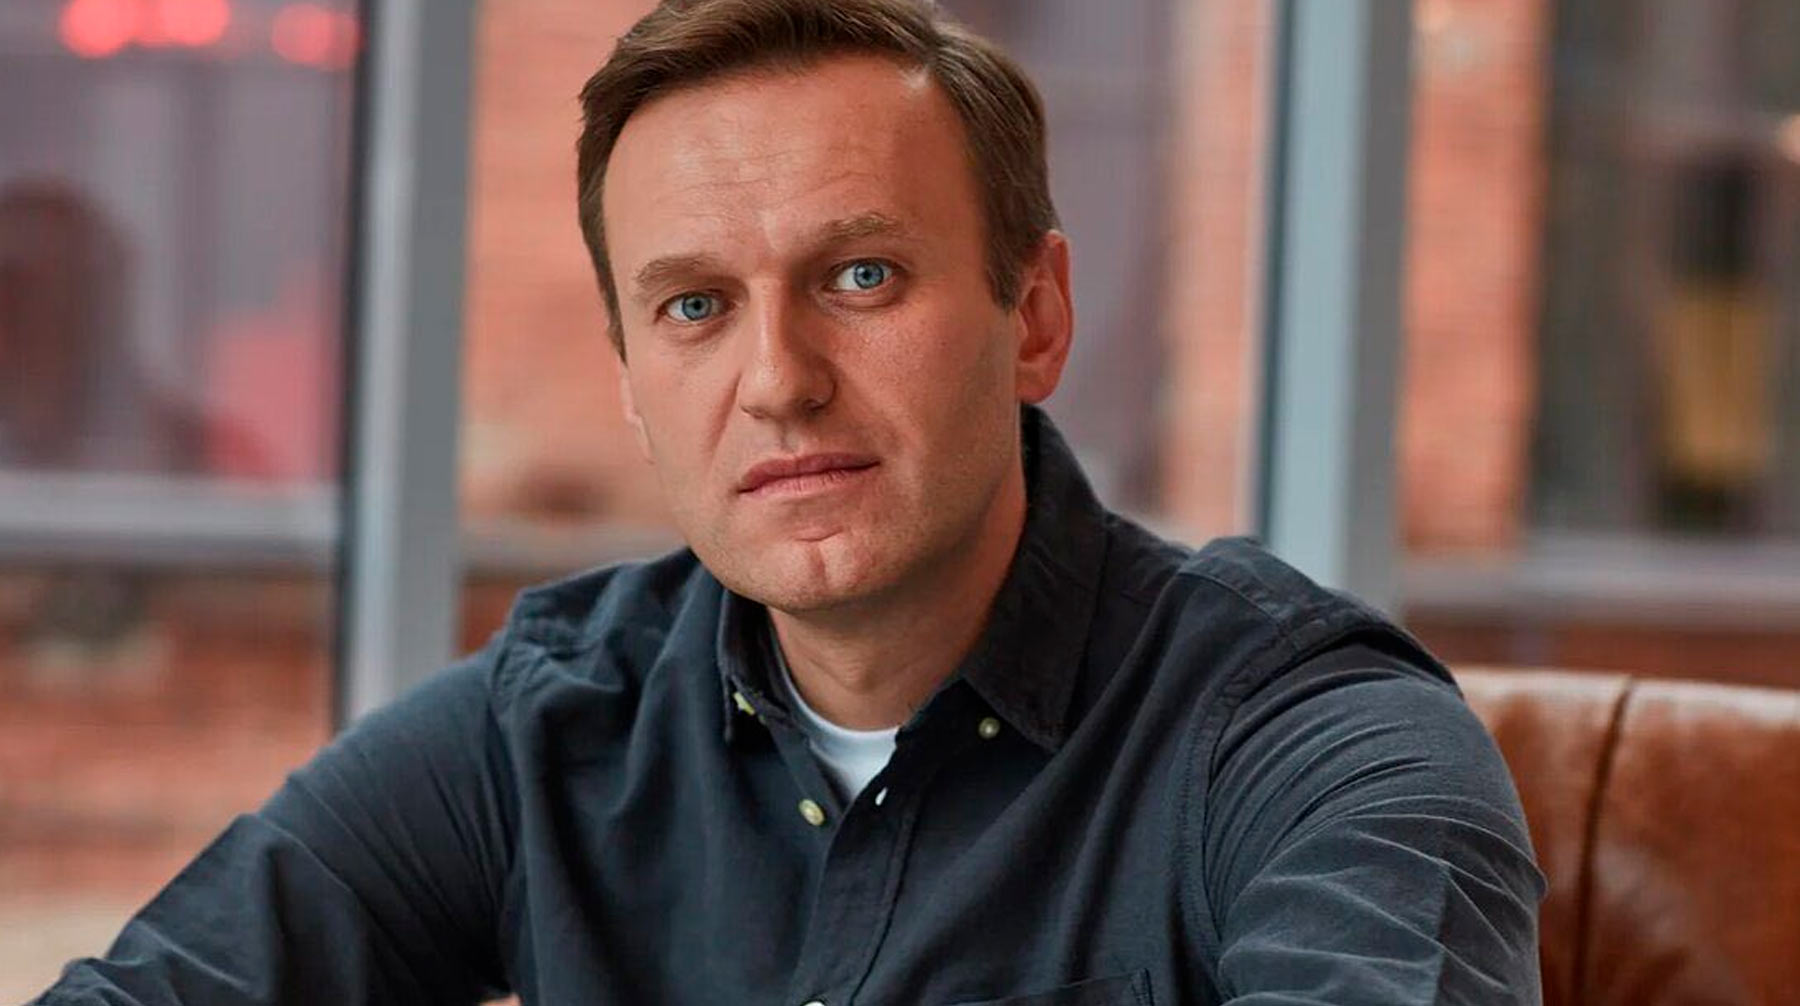 Врачи пообещали в течение дня определиться с диагнозом политика Фото: © Facebook / Алексей Навальный